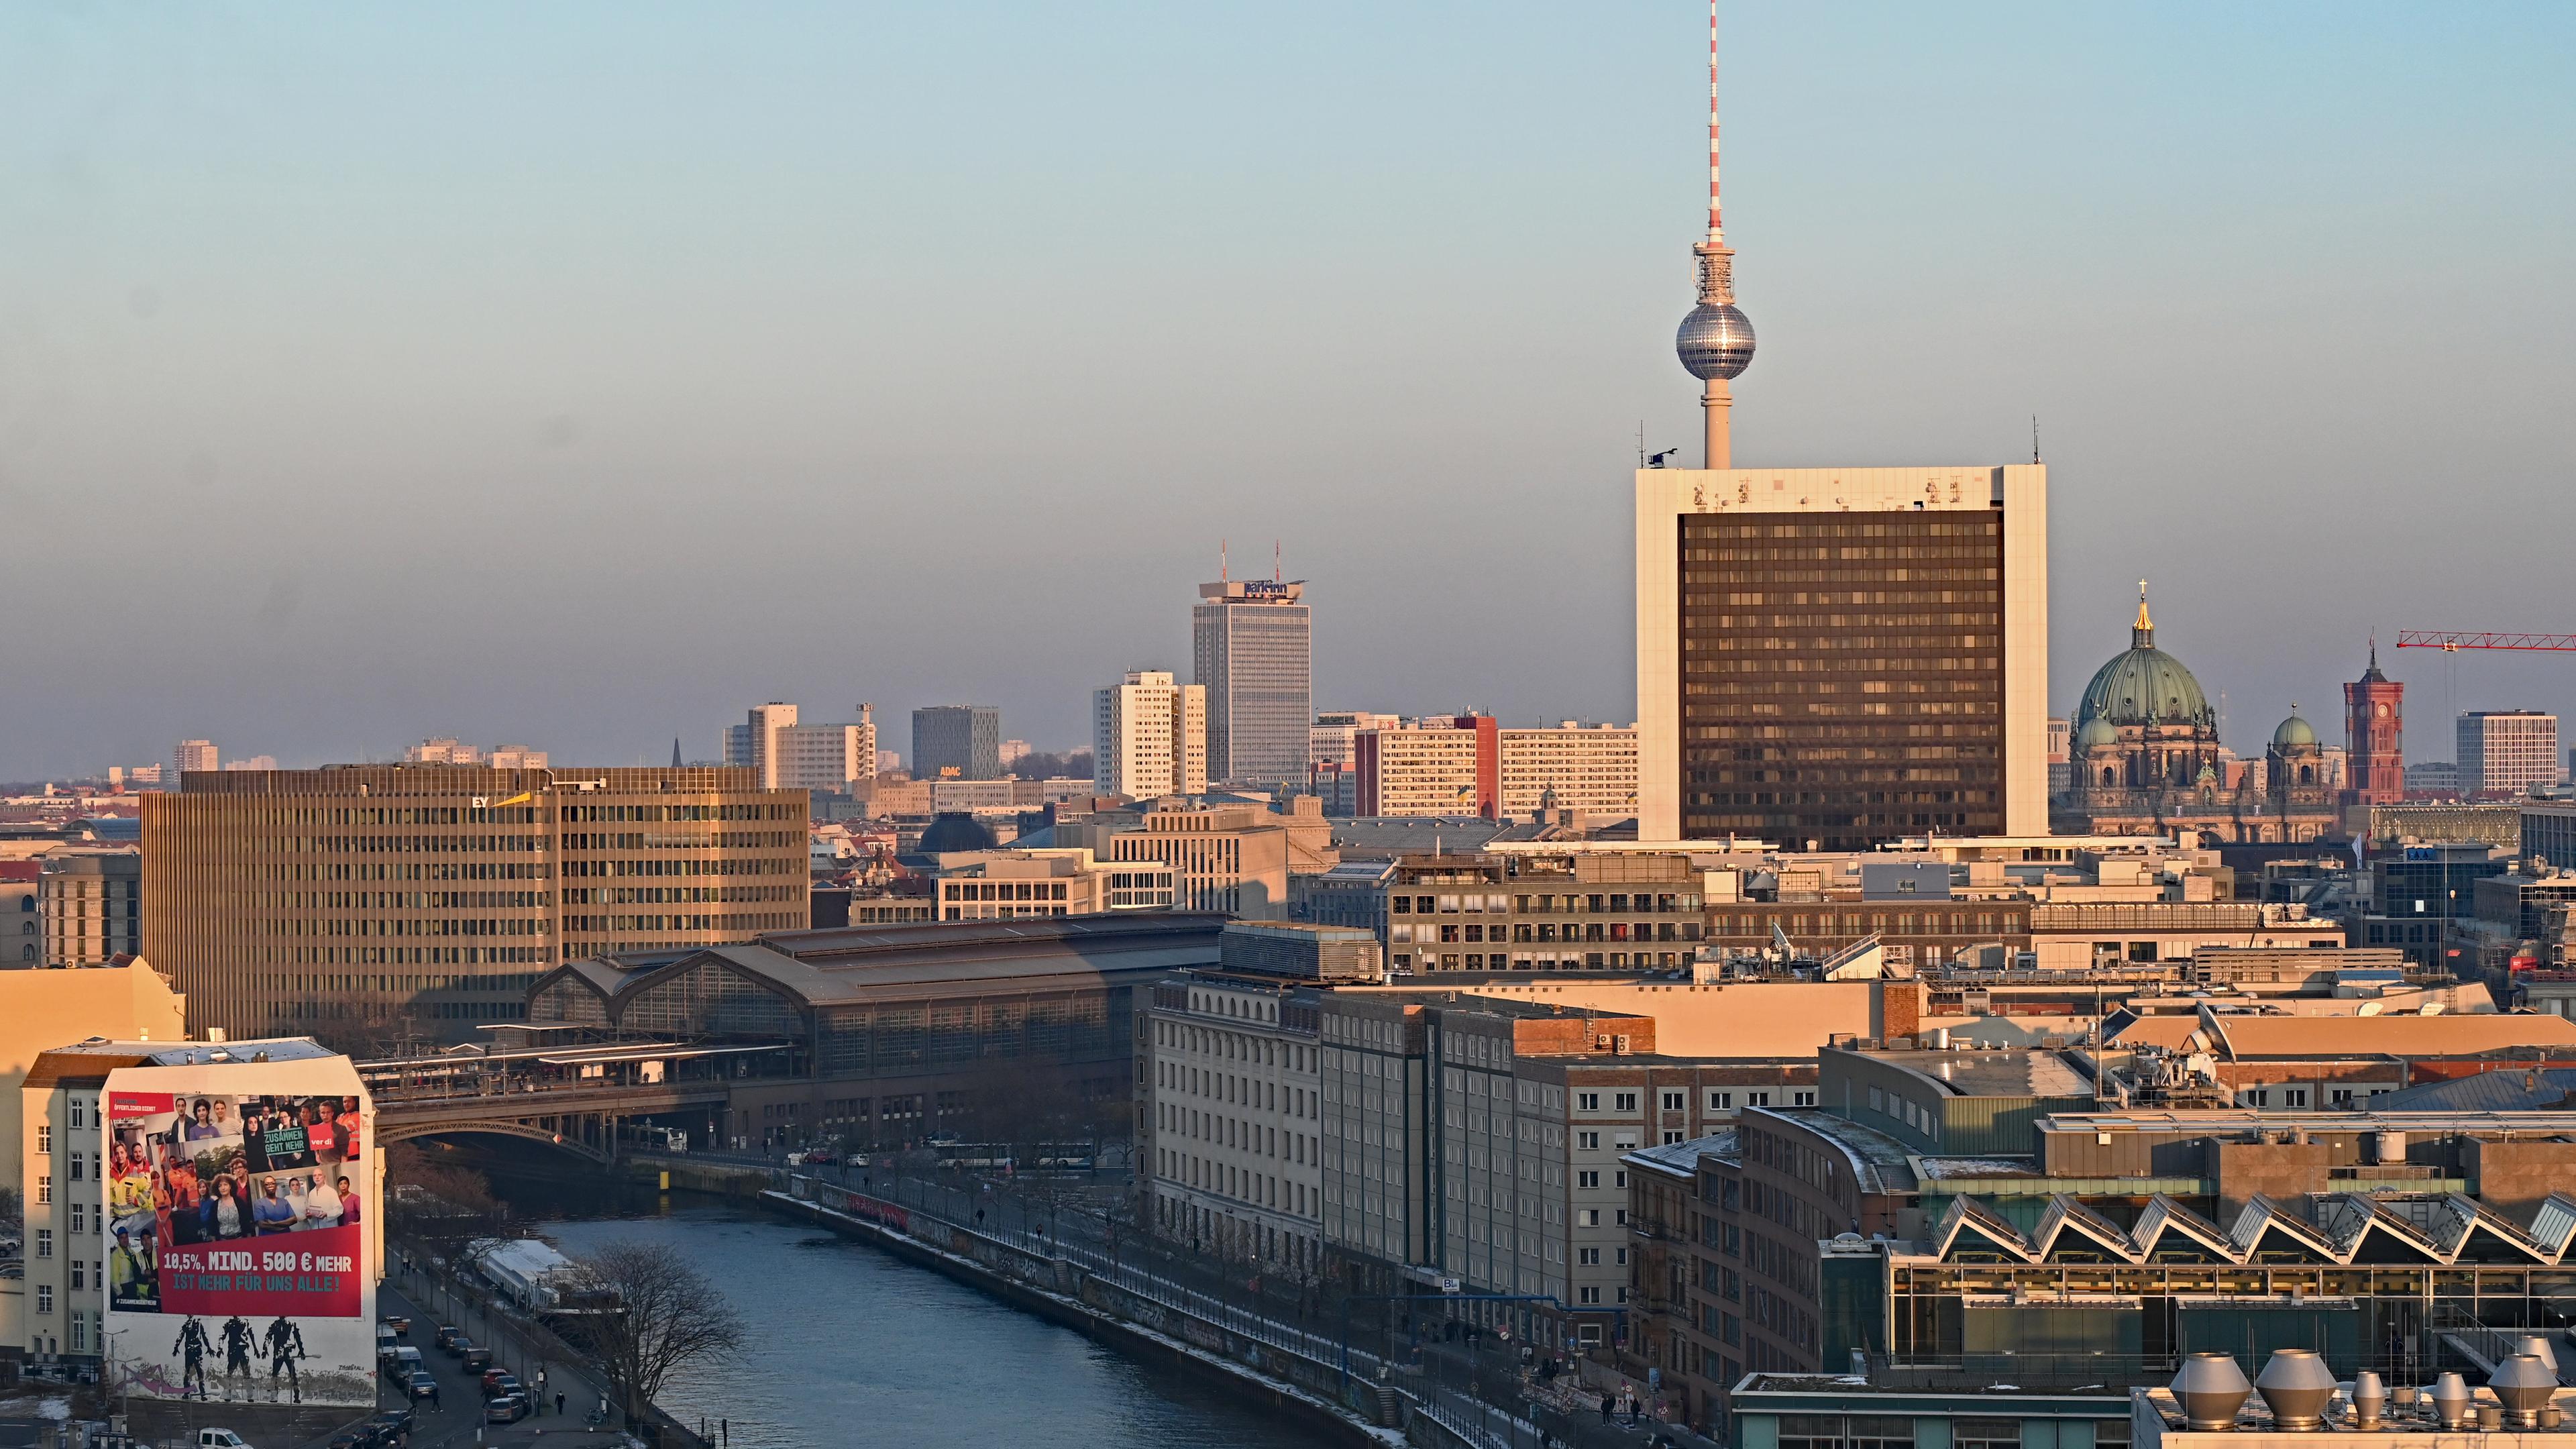 Berlin: Blick auf den Fernsehturm, dem Berliner Dom und das Rote Rathaus bei untergehender Sonne von der Kuppel des Reichstagsgebäudes.